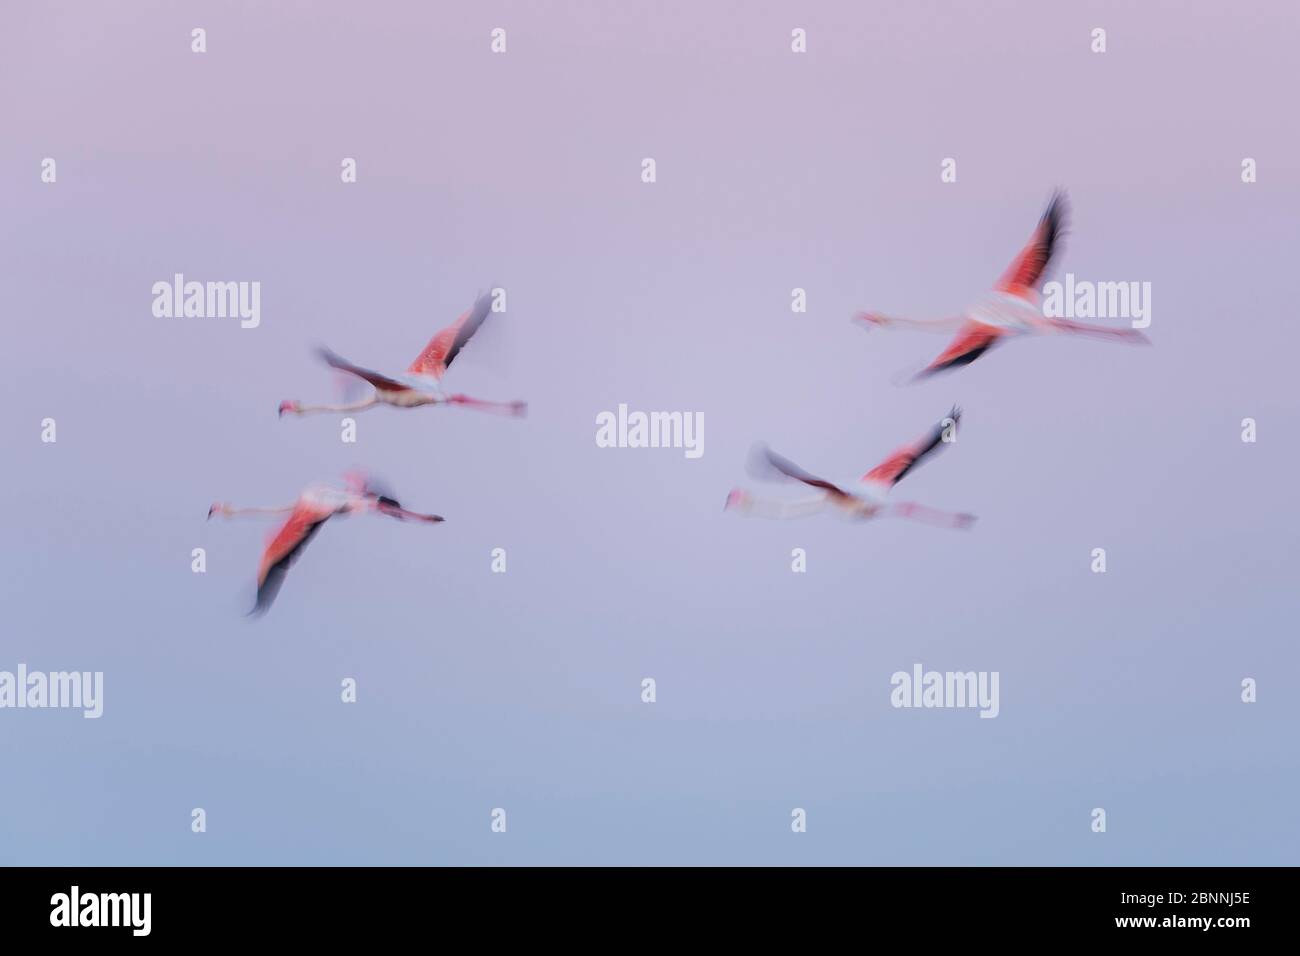 Europäischer Flamingo, großer Flamingo, Phoenicopterus roseus, bei Sonnenaufgang im Flug, Long Exposure, Saintes-Maries-de-la-Mer, Parc naturel régional de Camargue, Languedoc Roussillon, Frankreich Stockfoto